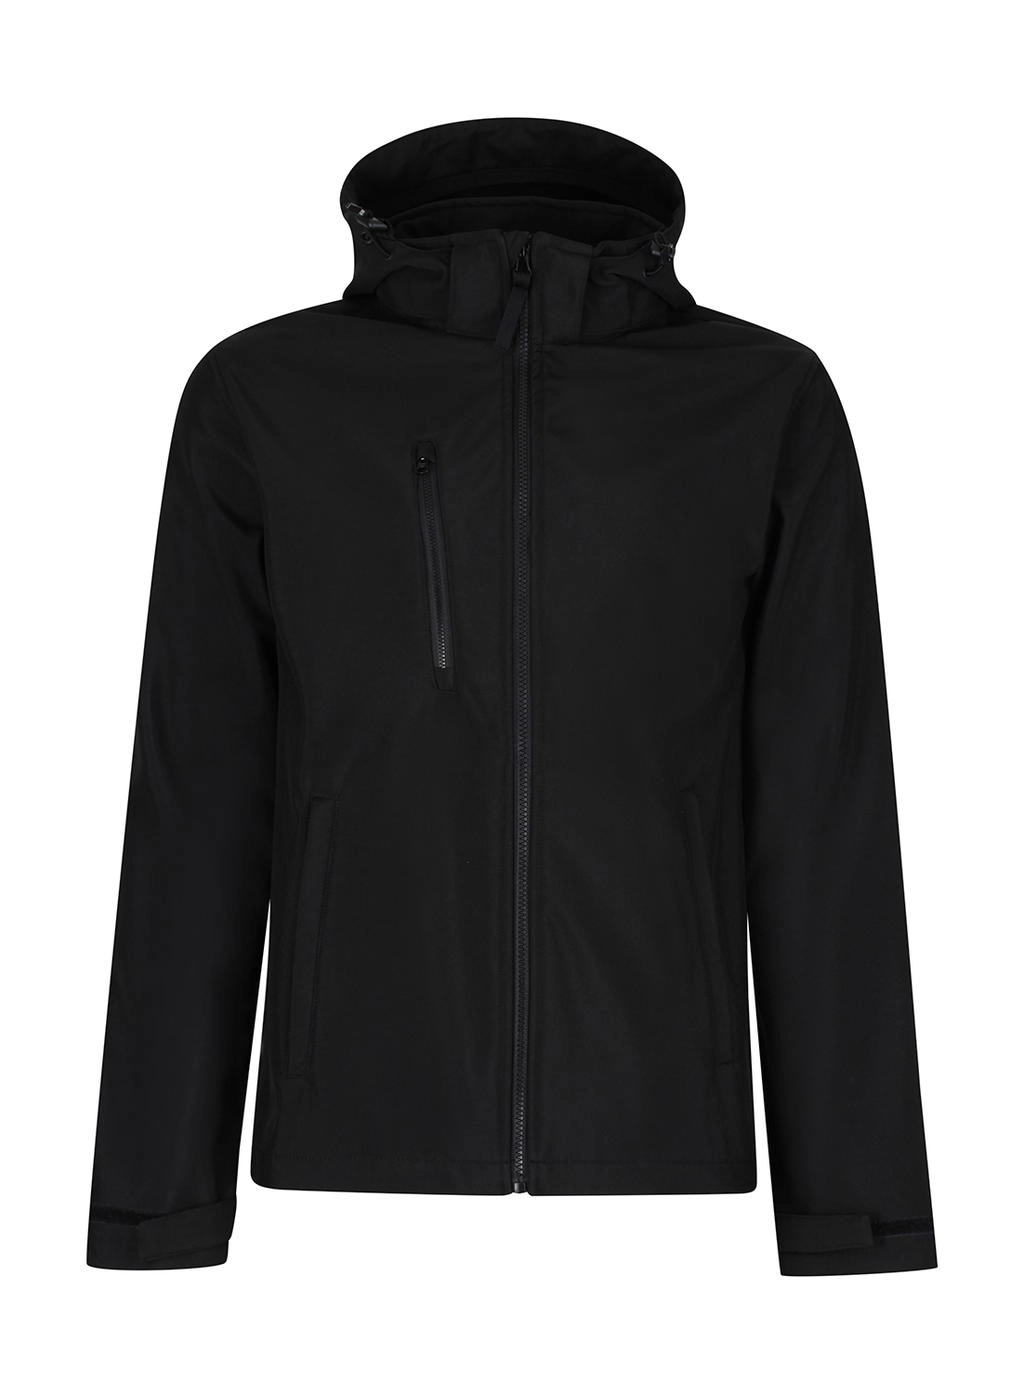 Venturer 3-Layer Hooded Softshell Jacket zum Besticken und Bedrucken in der Farbe Black mit Ihren Logo, Schriftzug oder Motiv.